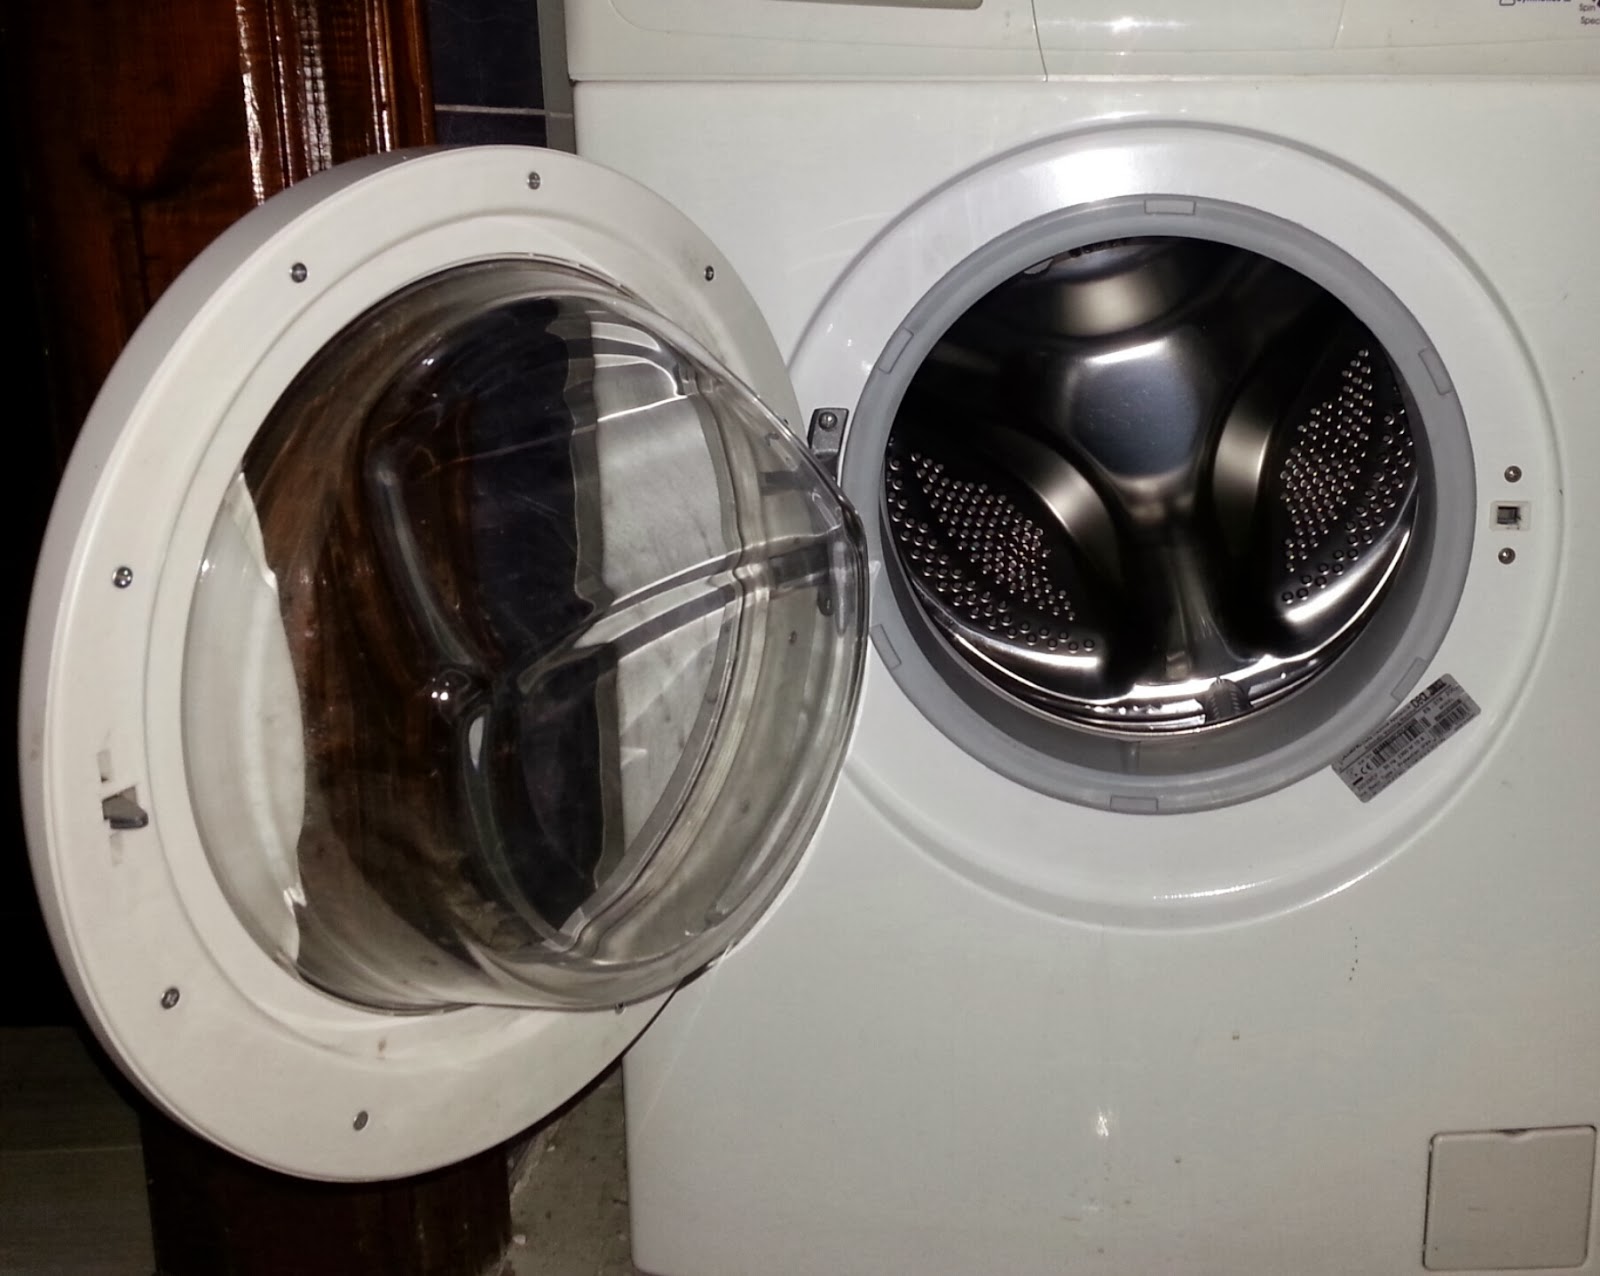 Гудит стиральная машина при стирке. Грязная стиральная машинка. Вонь из стиральной машинки. Затхлый запах в стиральной машине. Воняет стиральная машинка автомат.